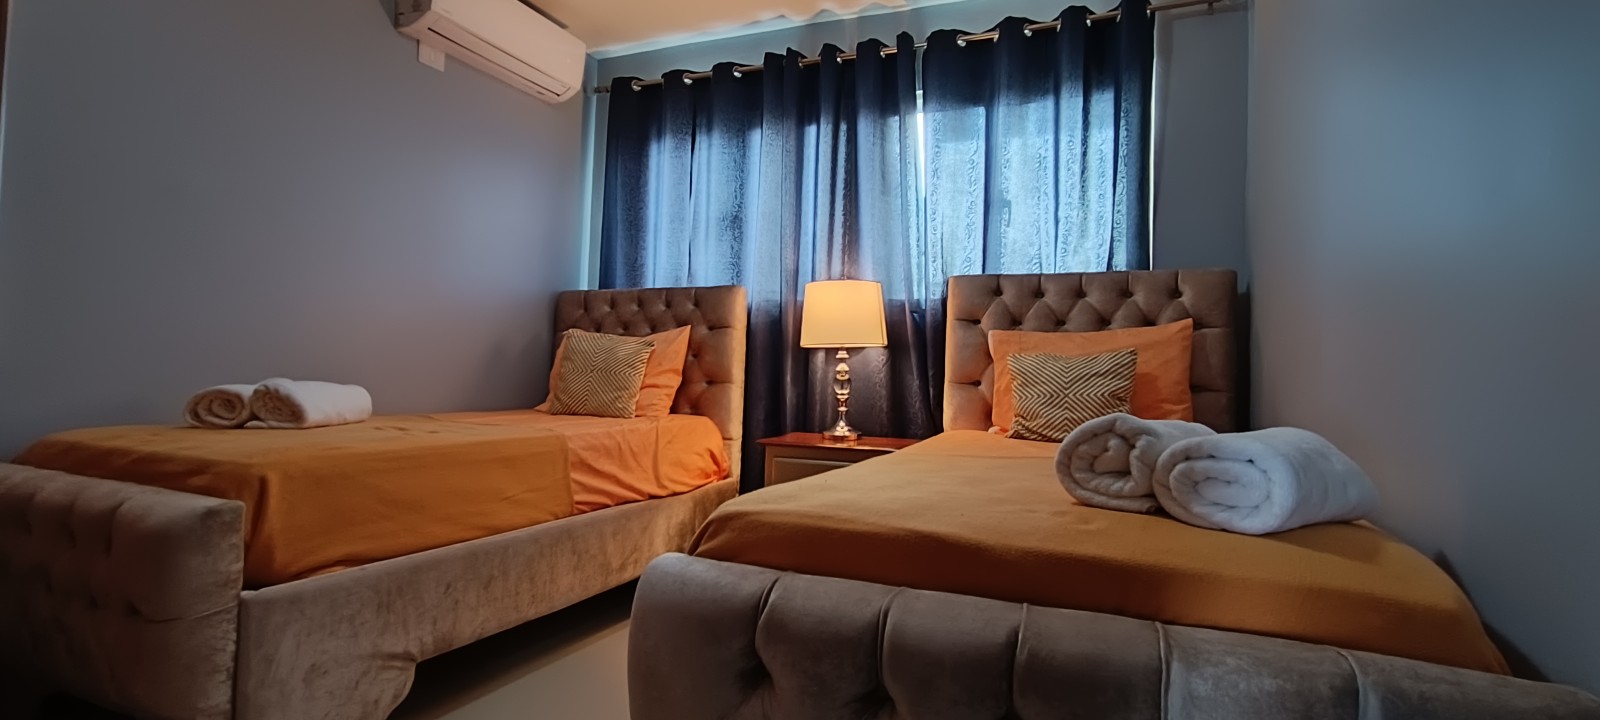 apartamentos - Airbnb AMUEBLADO en villa Olga seguro y confort 3